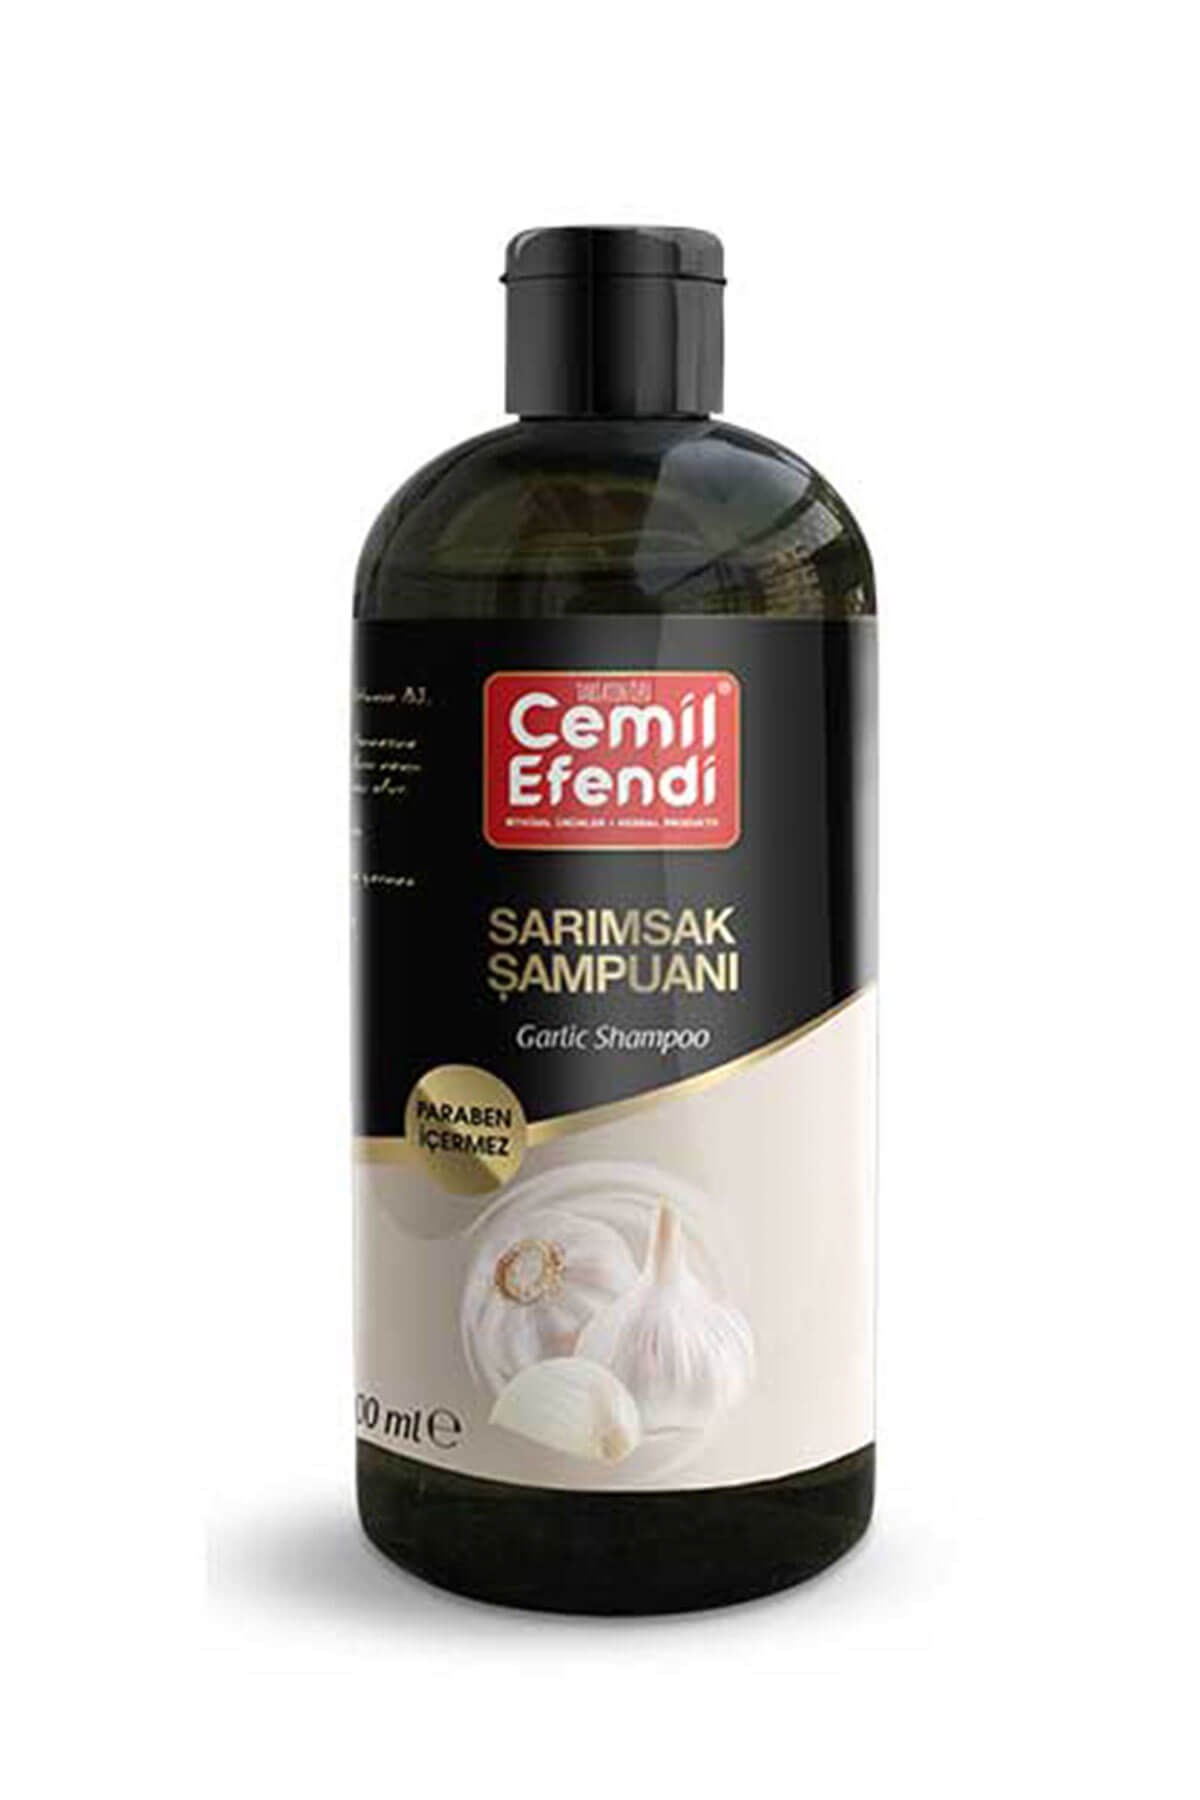 Cemil Efendi Sarımsak Şampuanı Fiyatı Online Satın Al | Çerez Tabağı